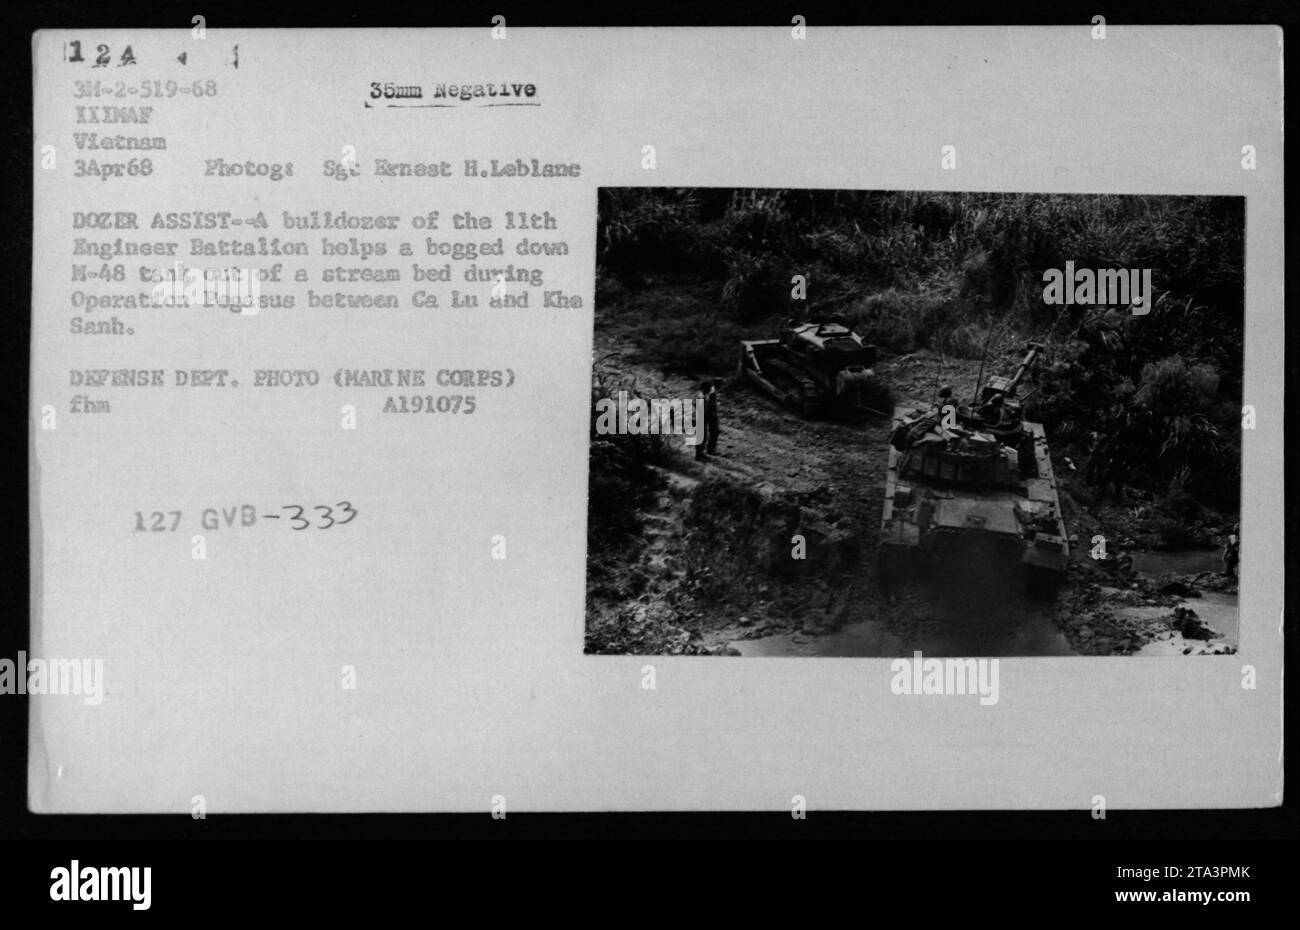 Ein Bulldozer des 11. Ingenieur-Bataillons unterstützt einen M-48-Panzer, der während der Operation Pegasus zwischen Ca Lu und Kha Sanh in einem Bachbett feststeckt. Das Foto wurde am 3. April 1968 von Sgt Ernest H. Leblanc aufgenommen und ist Teil der Sammlung von Bildern des US-Verteidigungsministeriums aus dem Vietnamkrieg. Stockfoto